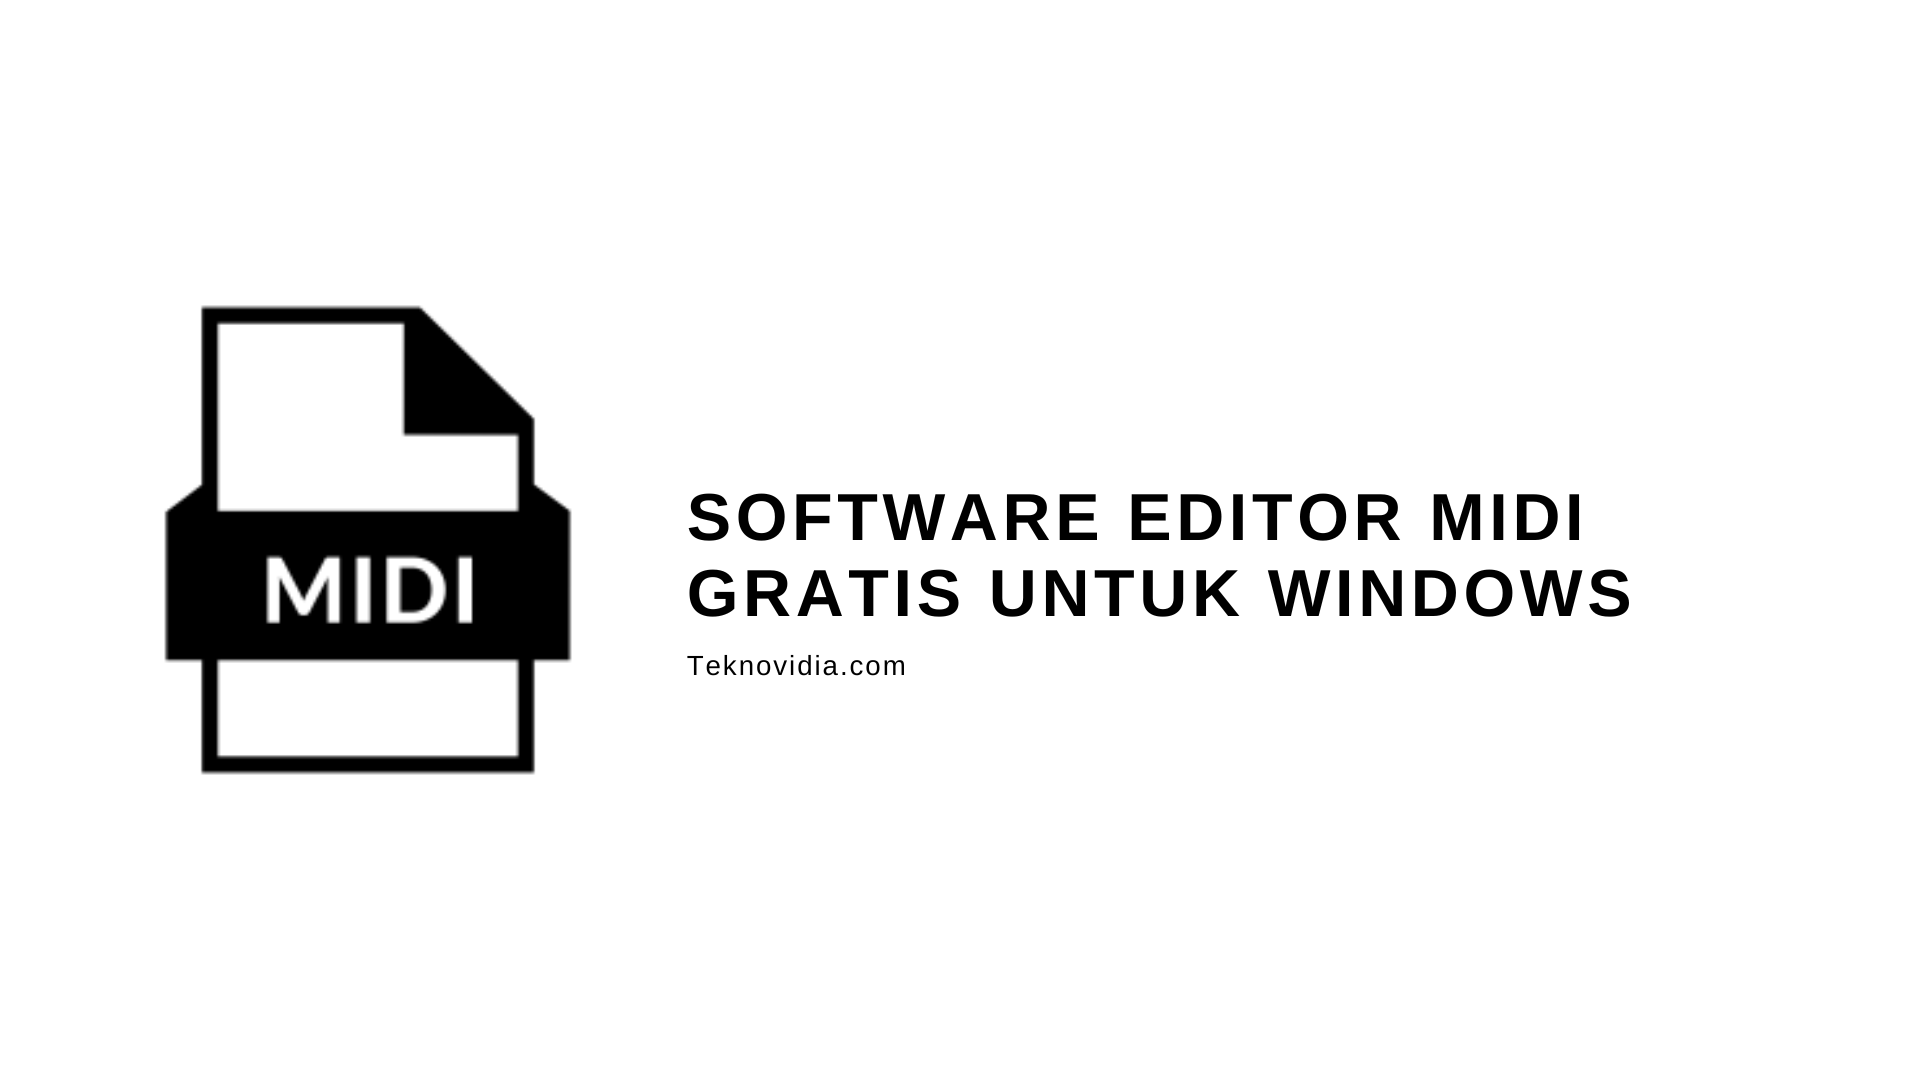 6 Software Editor MIDI Gratis untuk Windows